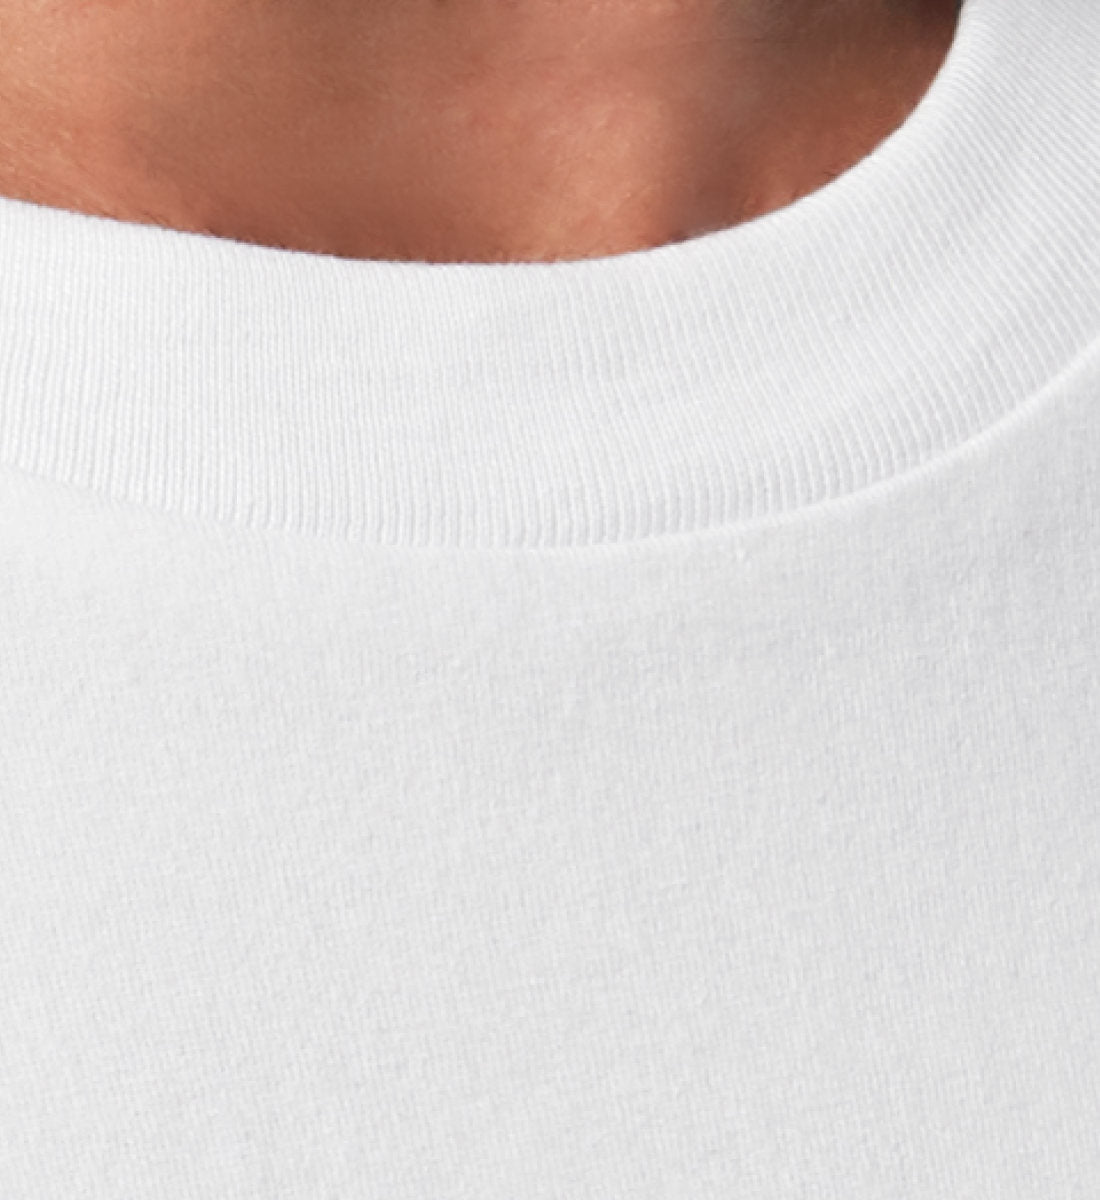 Weißes T-Shirt Unisex Relaxed Fit für Frauen und Männer bedruckt mit dem Design der Roger Rockawoo Kollektion Minimalism